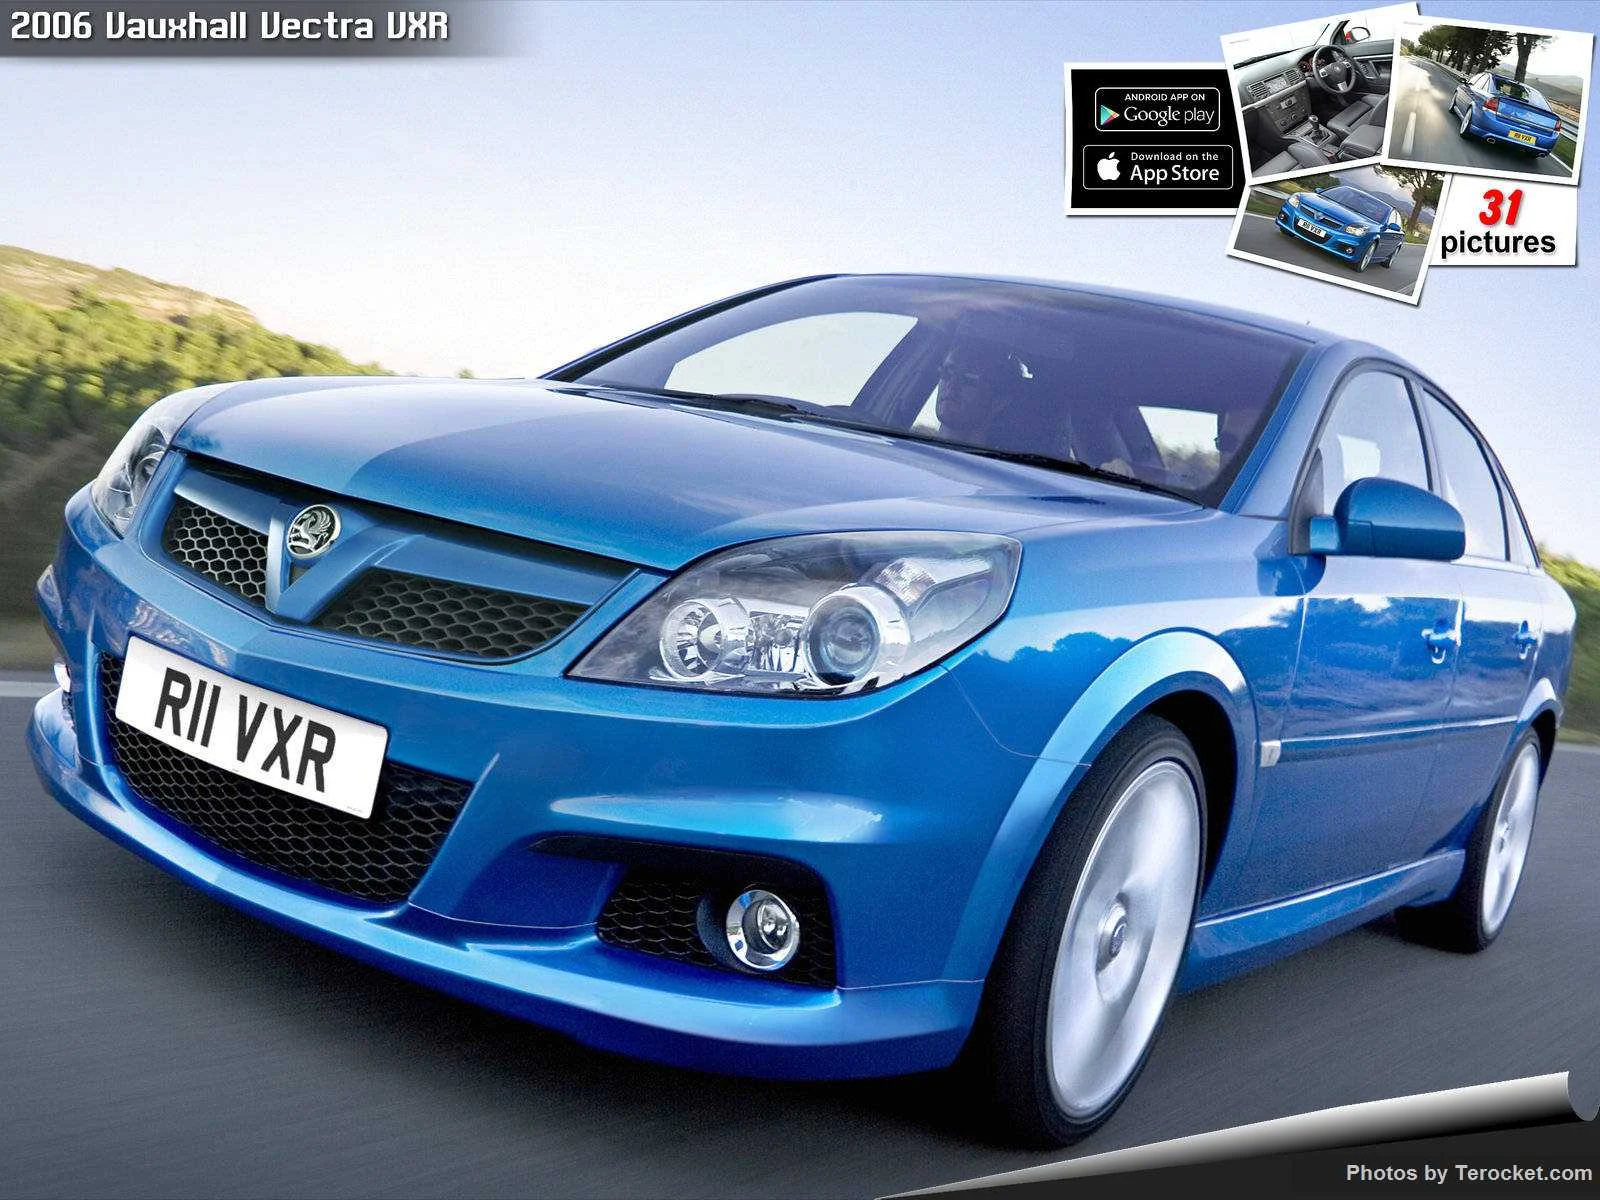 Hình ảnh xe ô tô Vauxhall Vectra VXR 2006 & nội ngoại thất